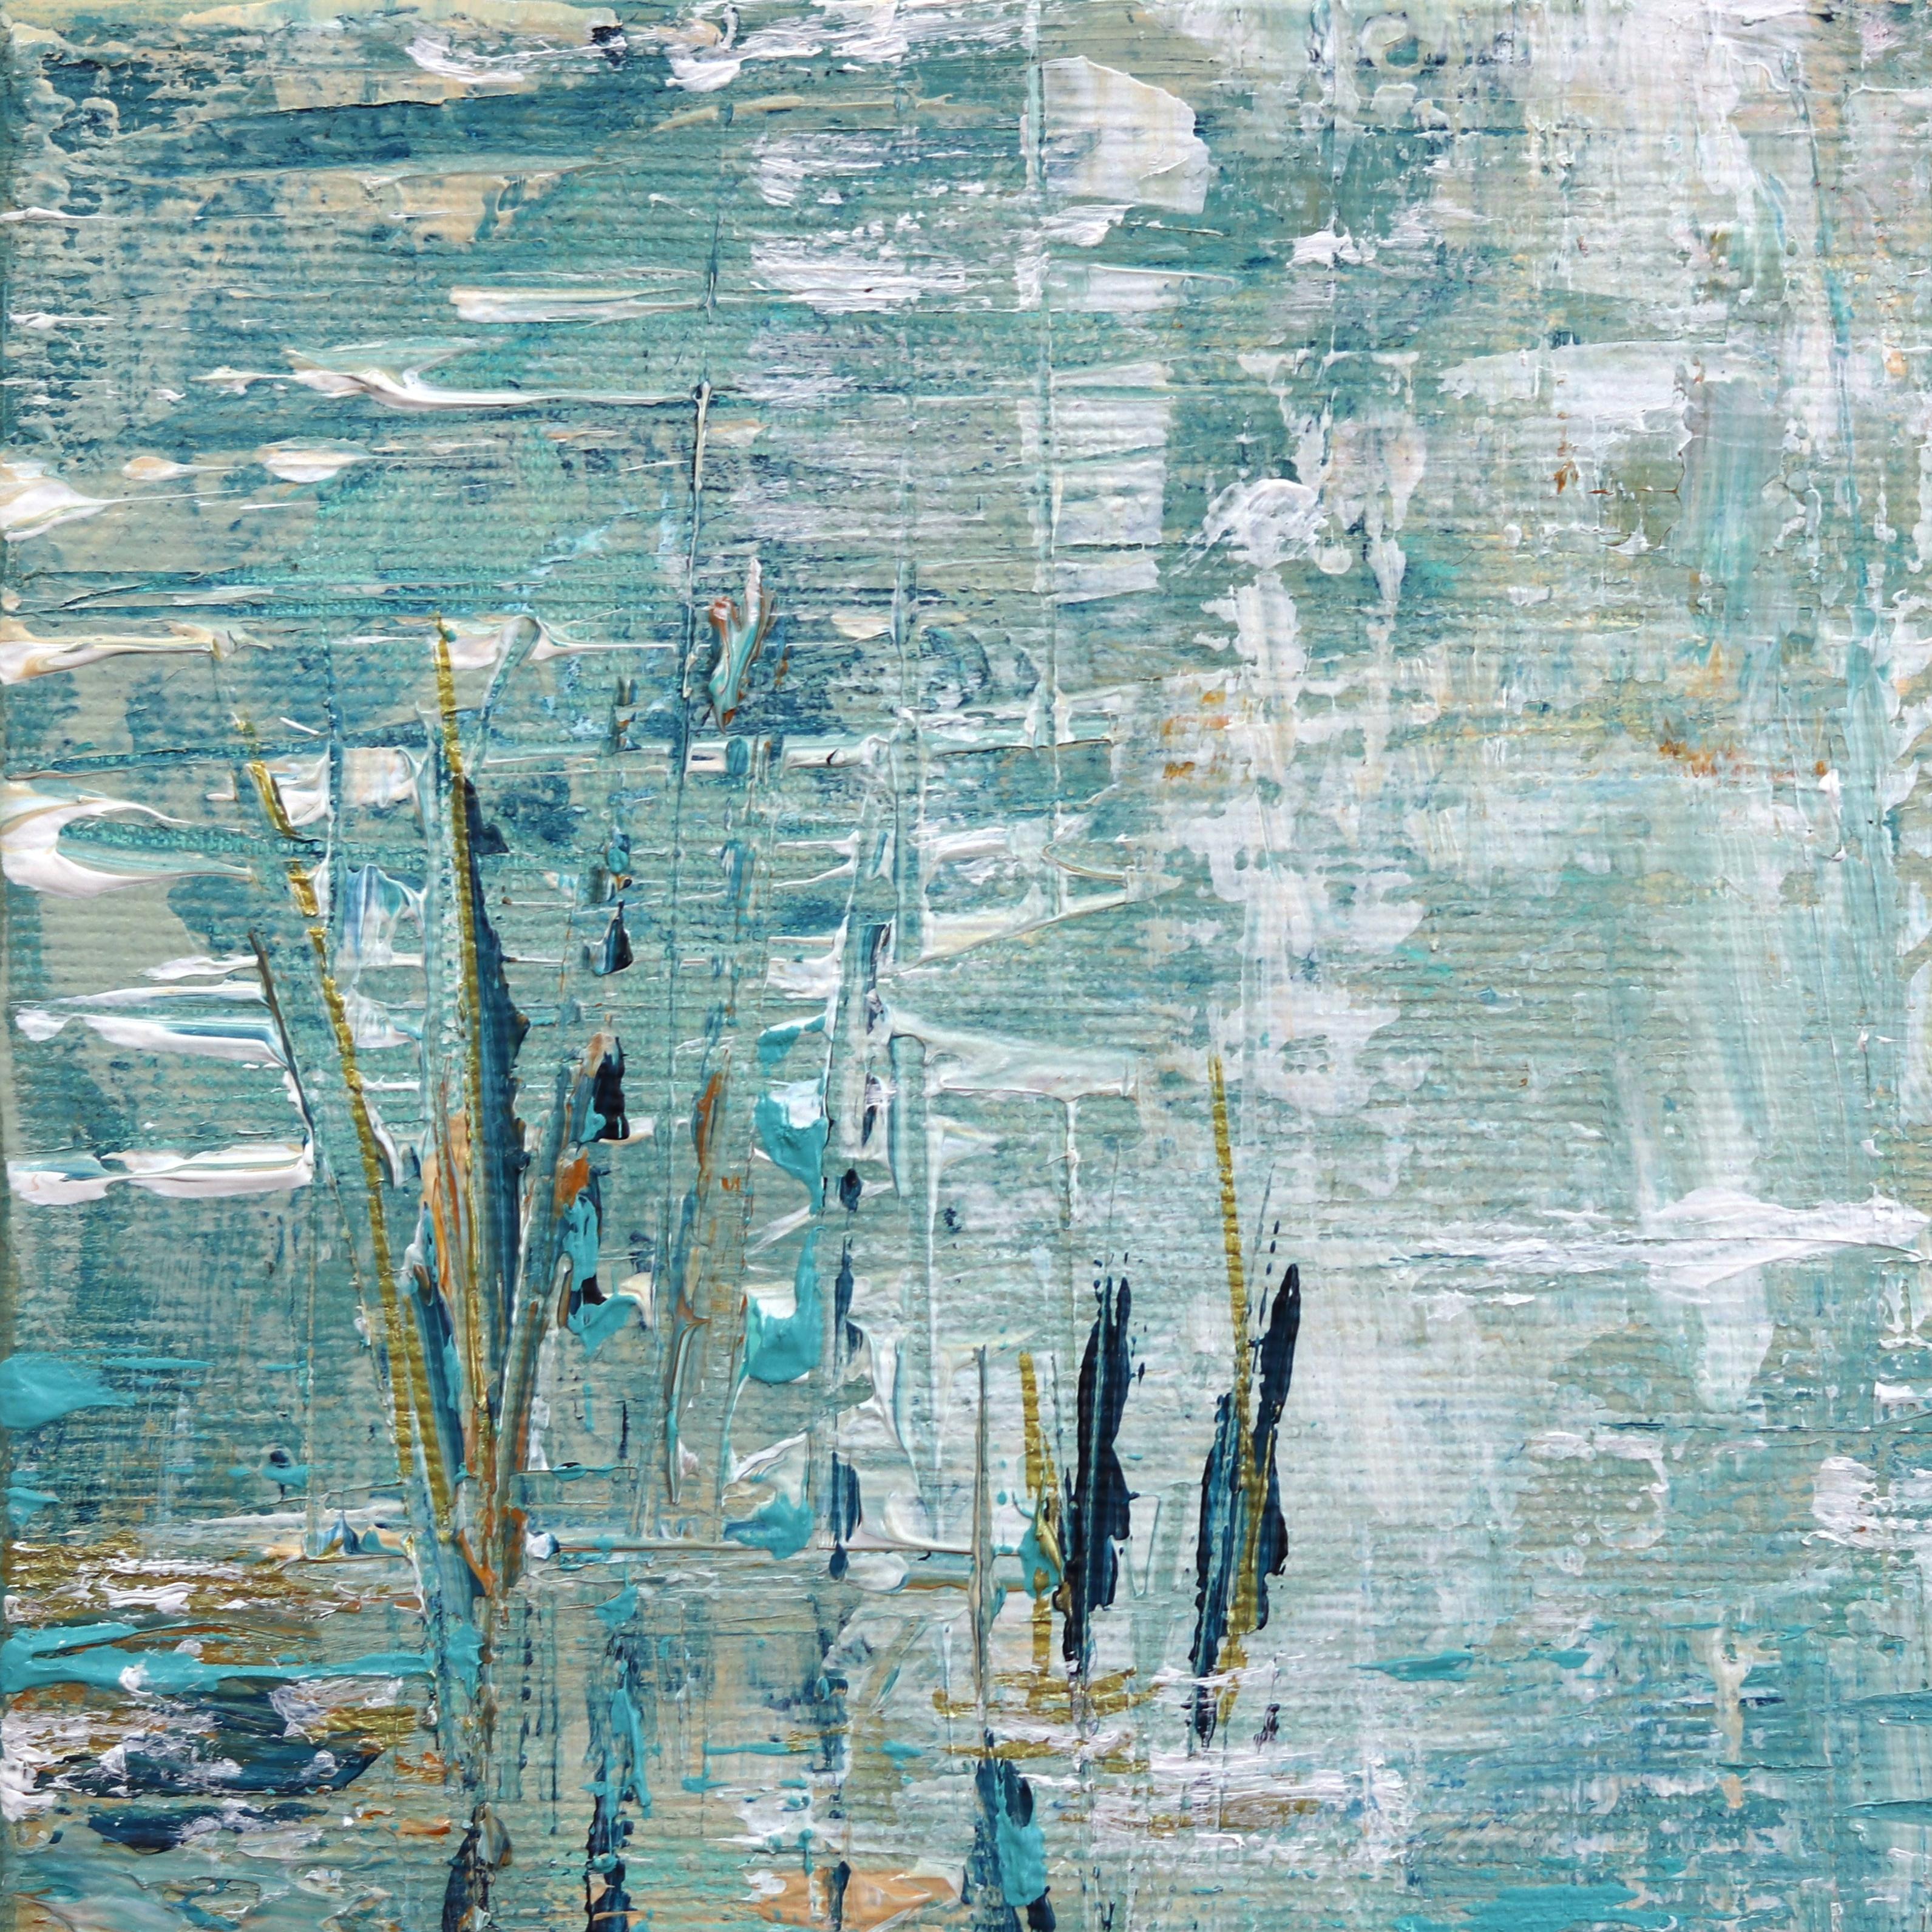 Ivana Milosevic crée des paysages aquatiques inspirés de Monet, à la fois vibrants et apaisants, qui mettent l'accent sur la couleur et la texture. Elle utilise des couteaux à palette et des pinceaux pour graver des détails dans les couches de